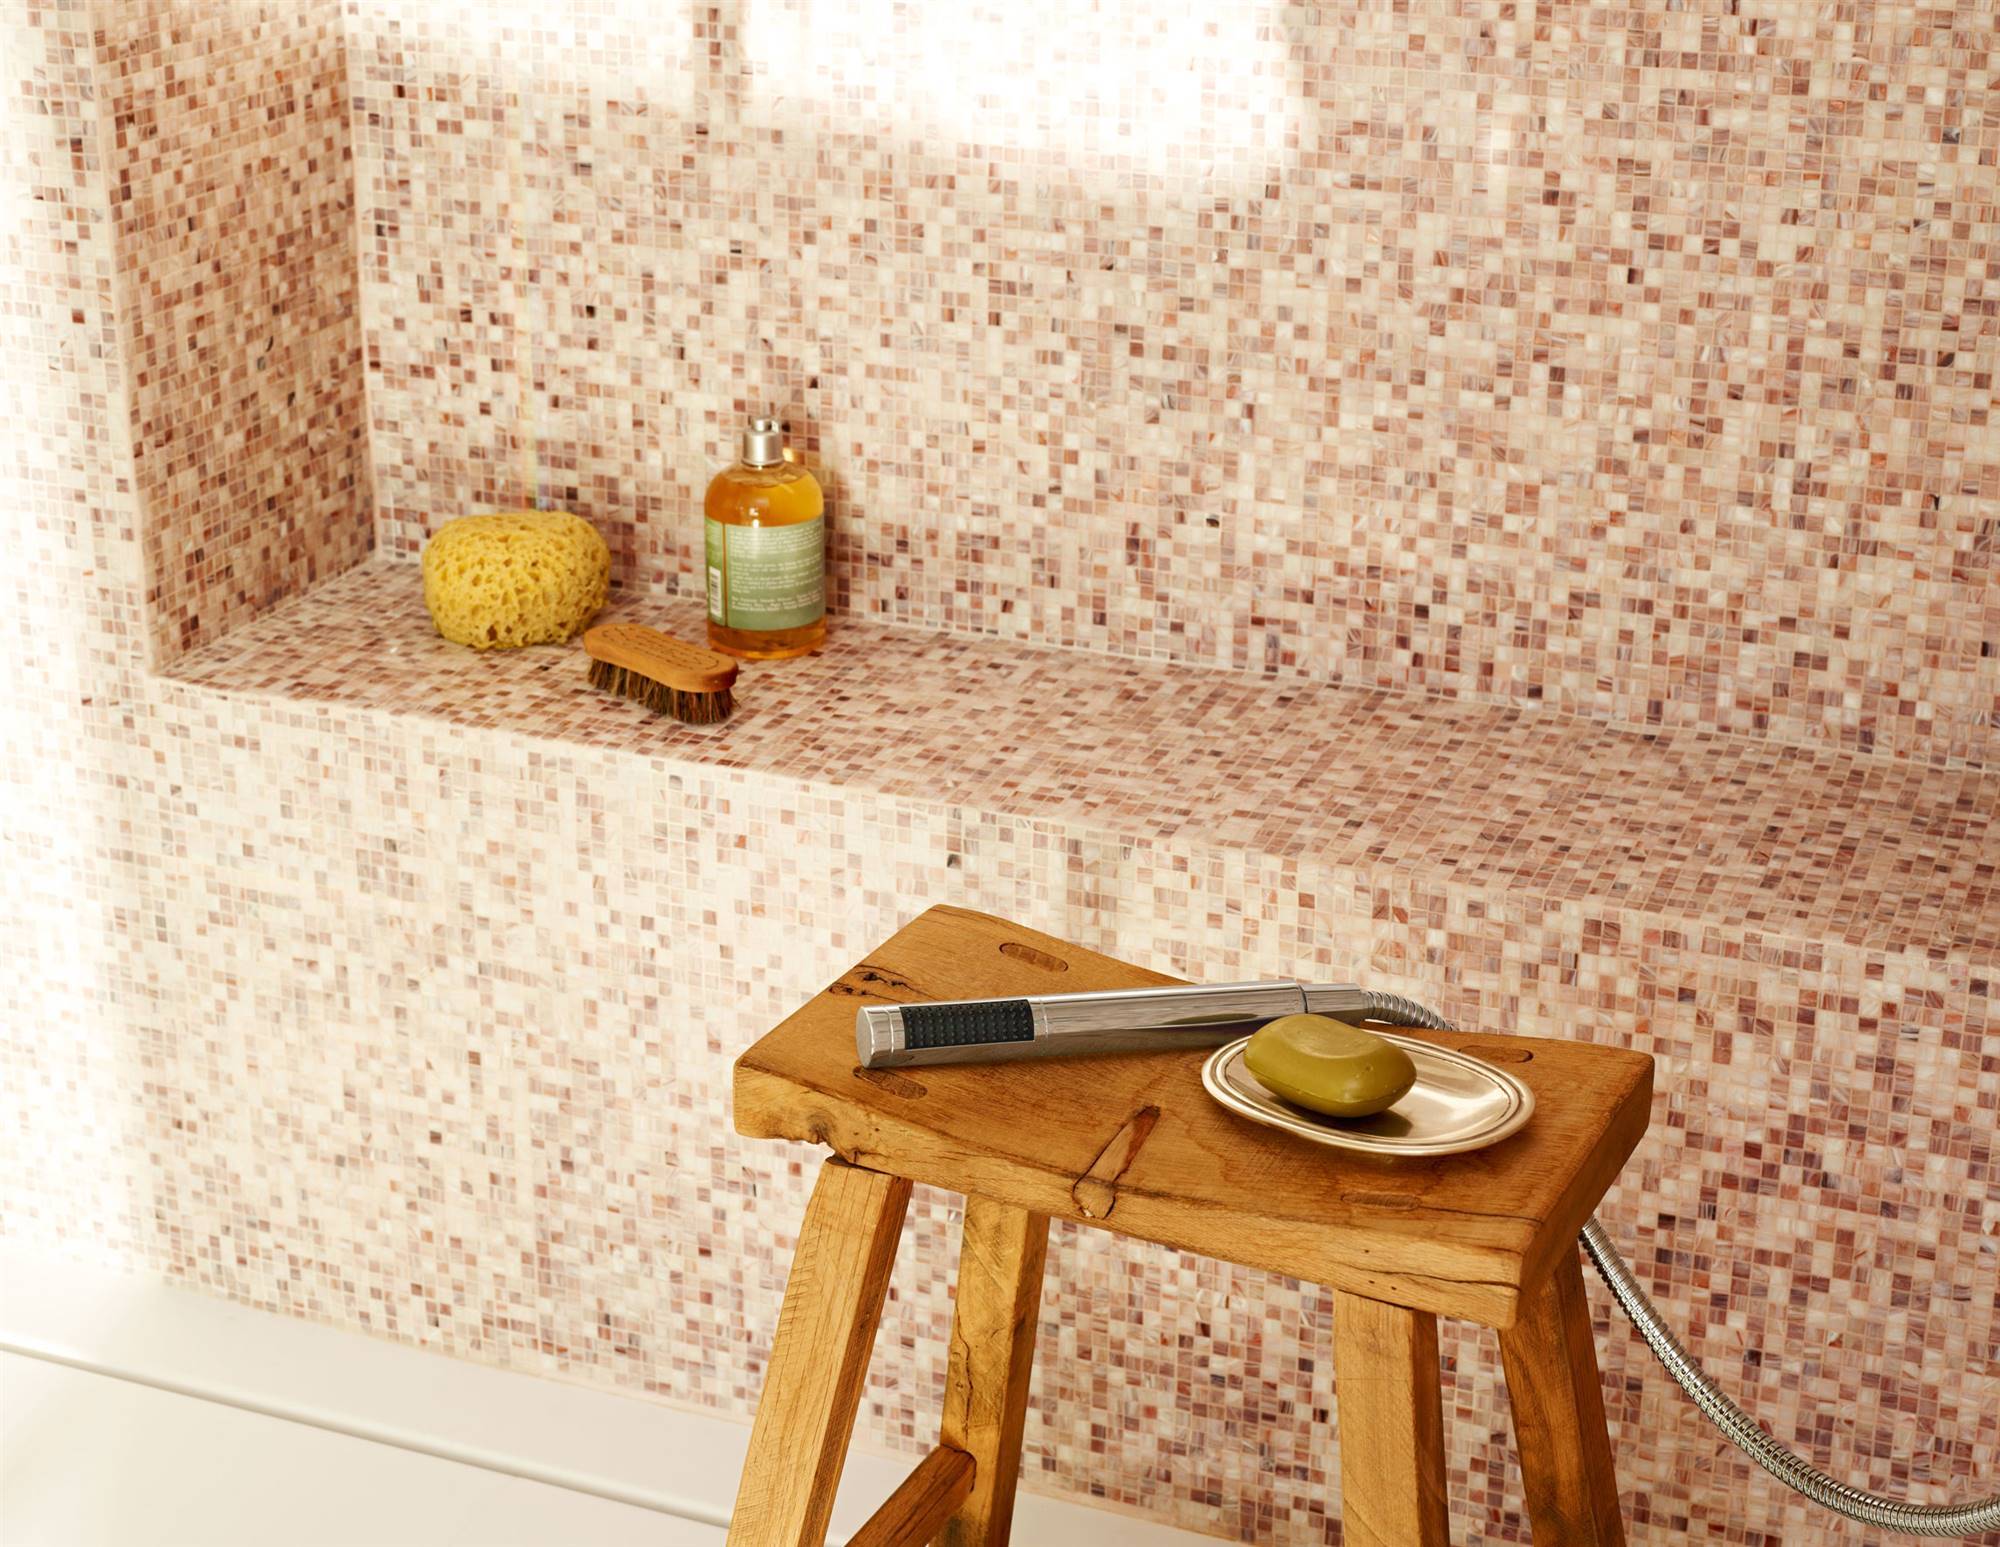 Autoadhesiva con azulejos de mosaico mosaikplatten protección contra salpicaduras de cocina muro revestimiento